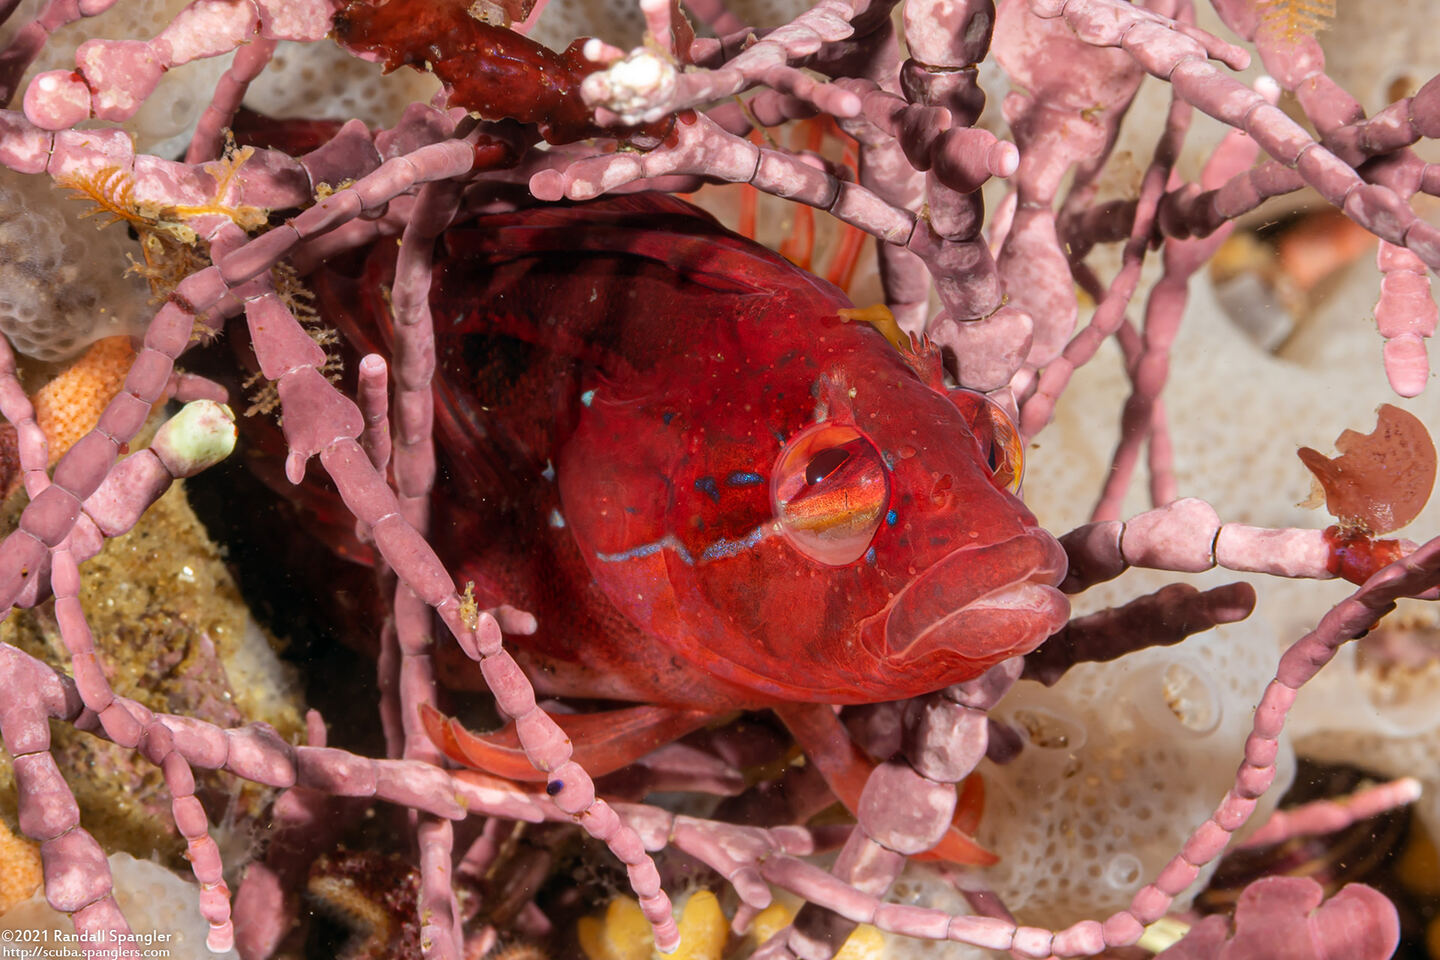 Gibbonsia montereyensis (Crevice Kelpfish); Eyes can rotate independently